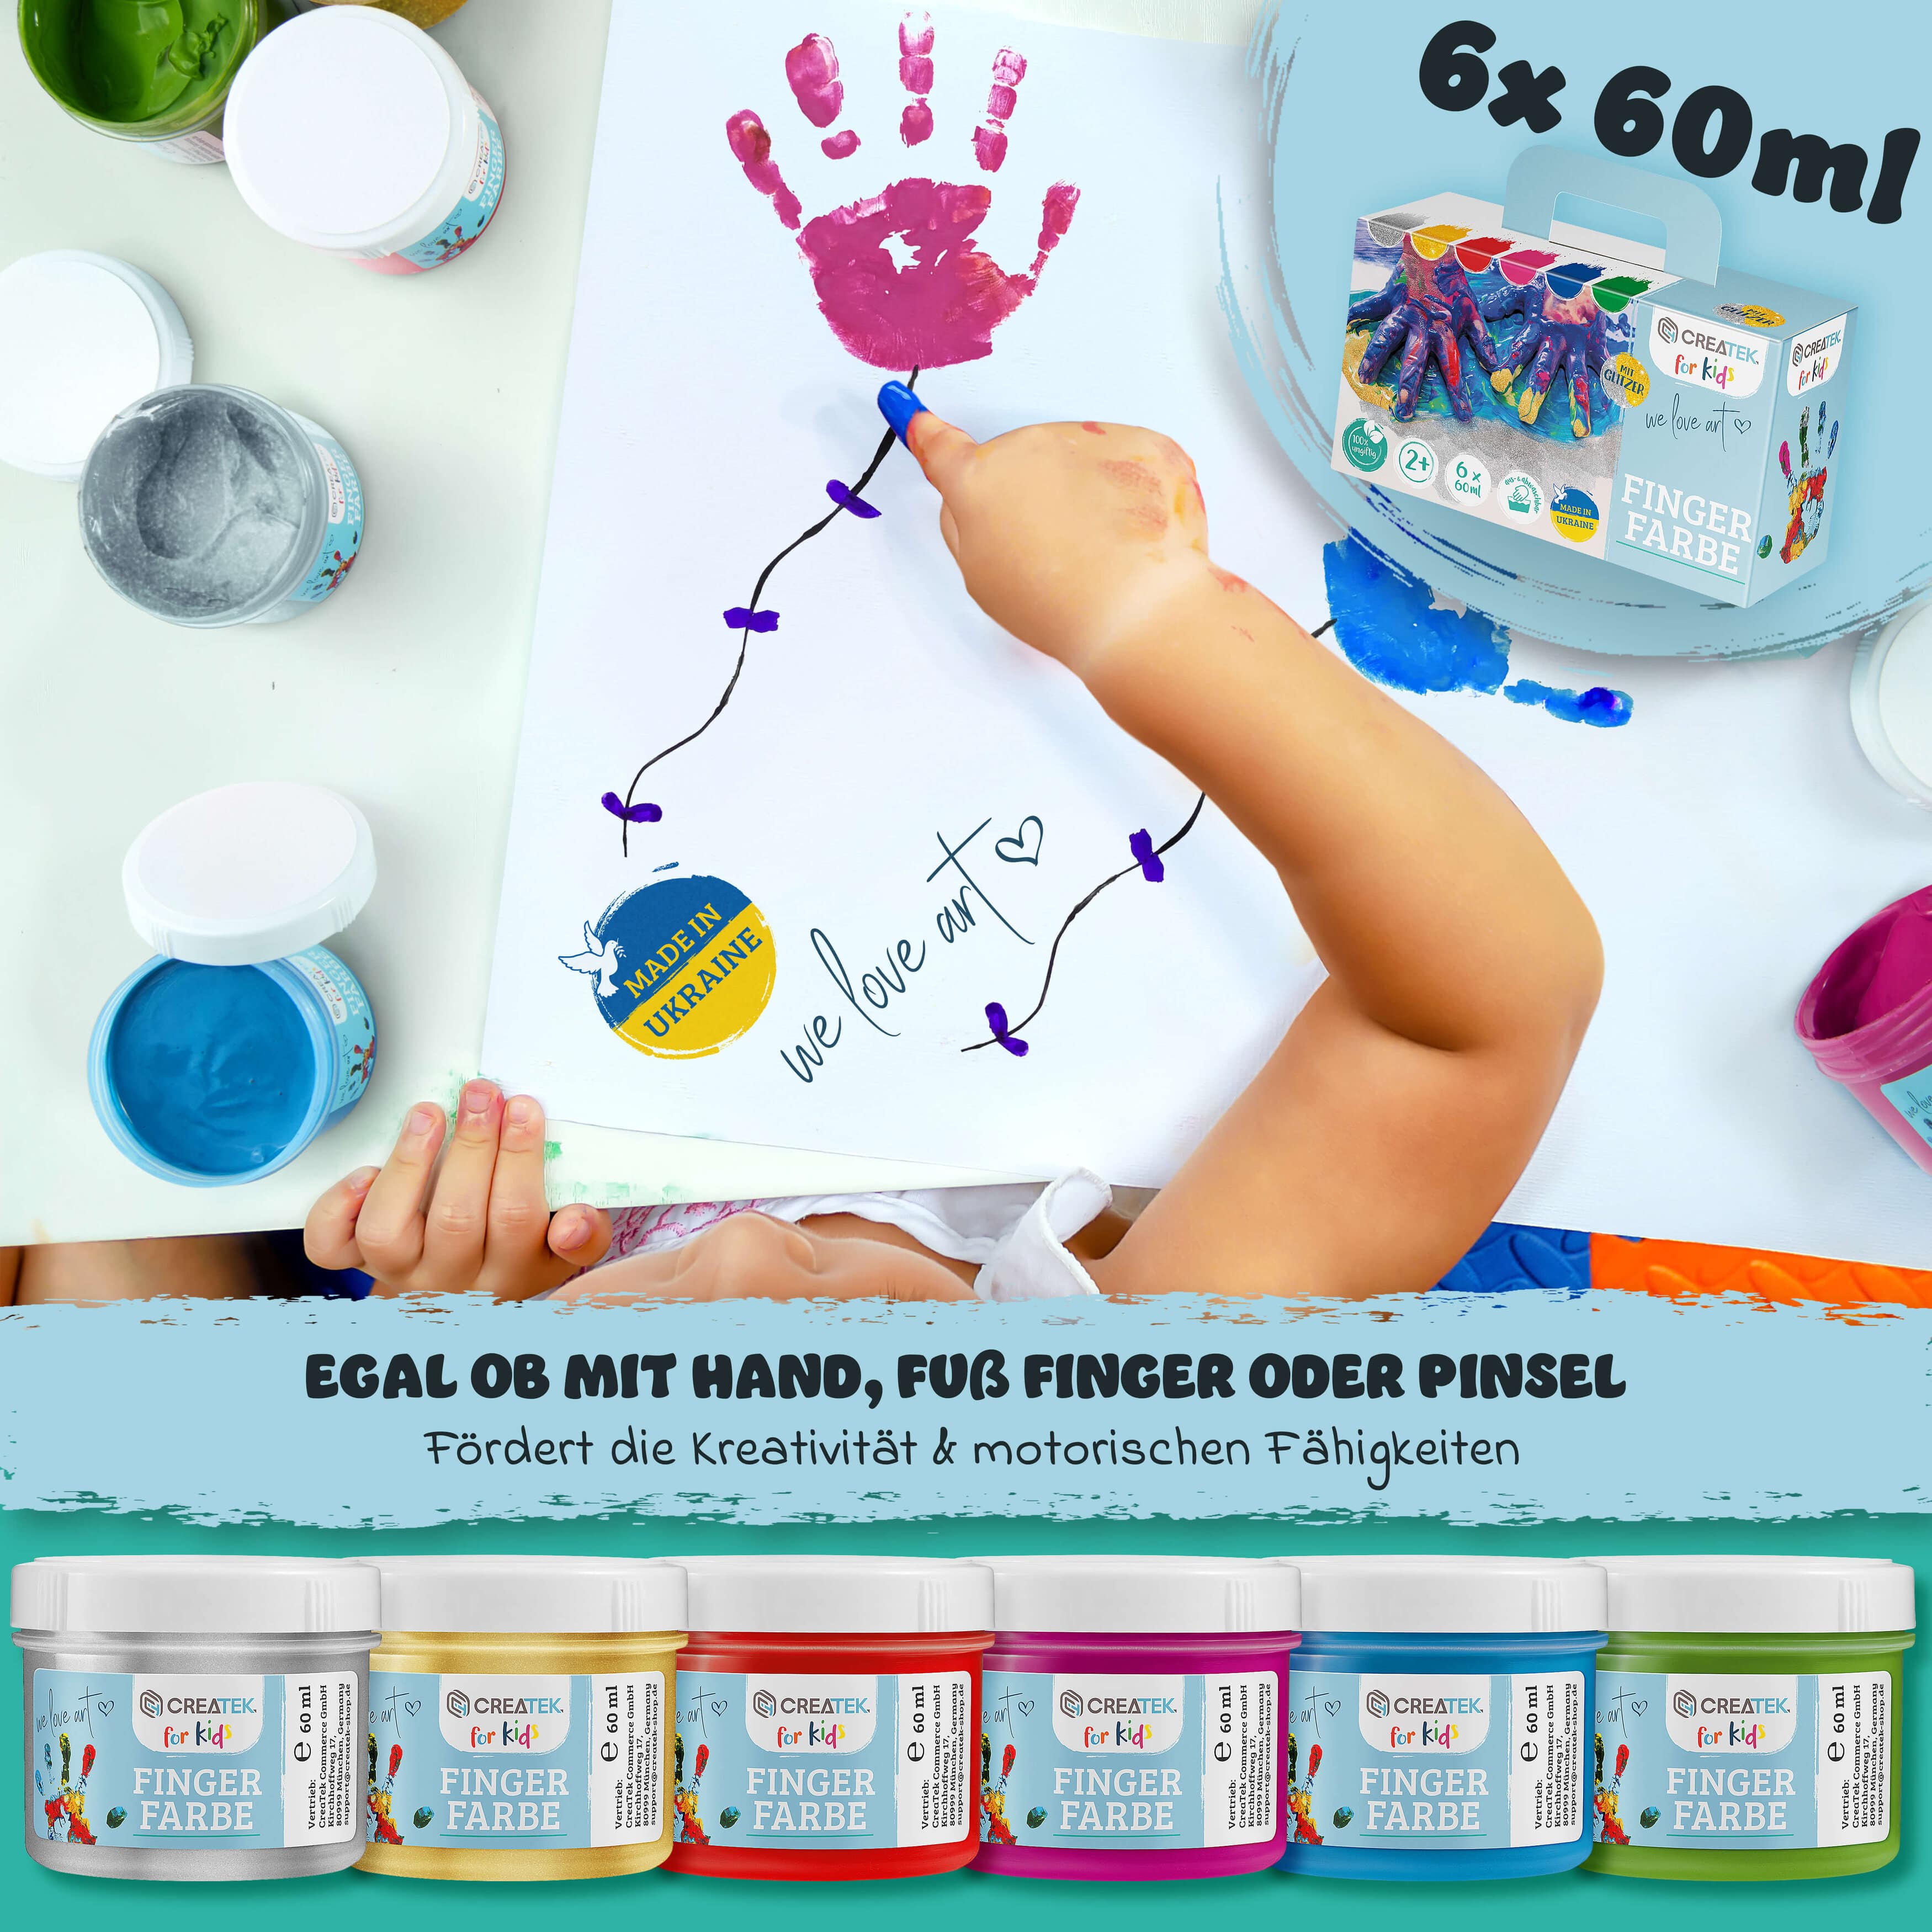 Fingerfarben für Kinder - mit Gold& Silber - 6 Töpfe mit 60ml | Ab 2 Jahren - ungiftig, vegan & abwaschbar | inkl. Malvorlagen